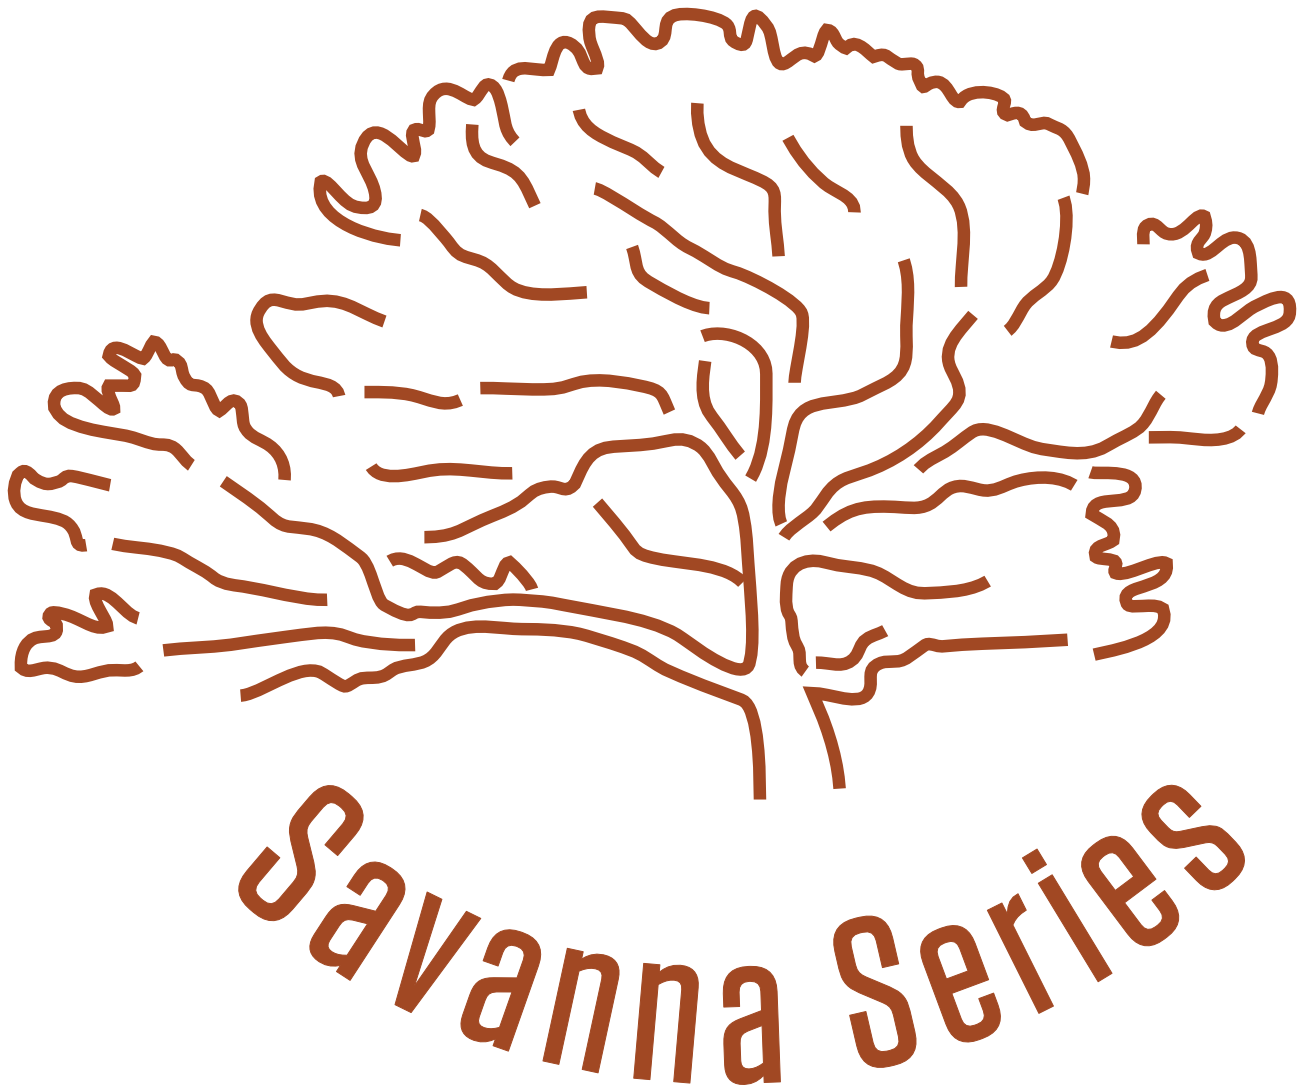 Savanna Series Trail Runs